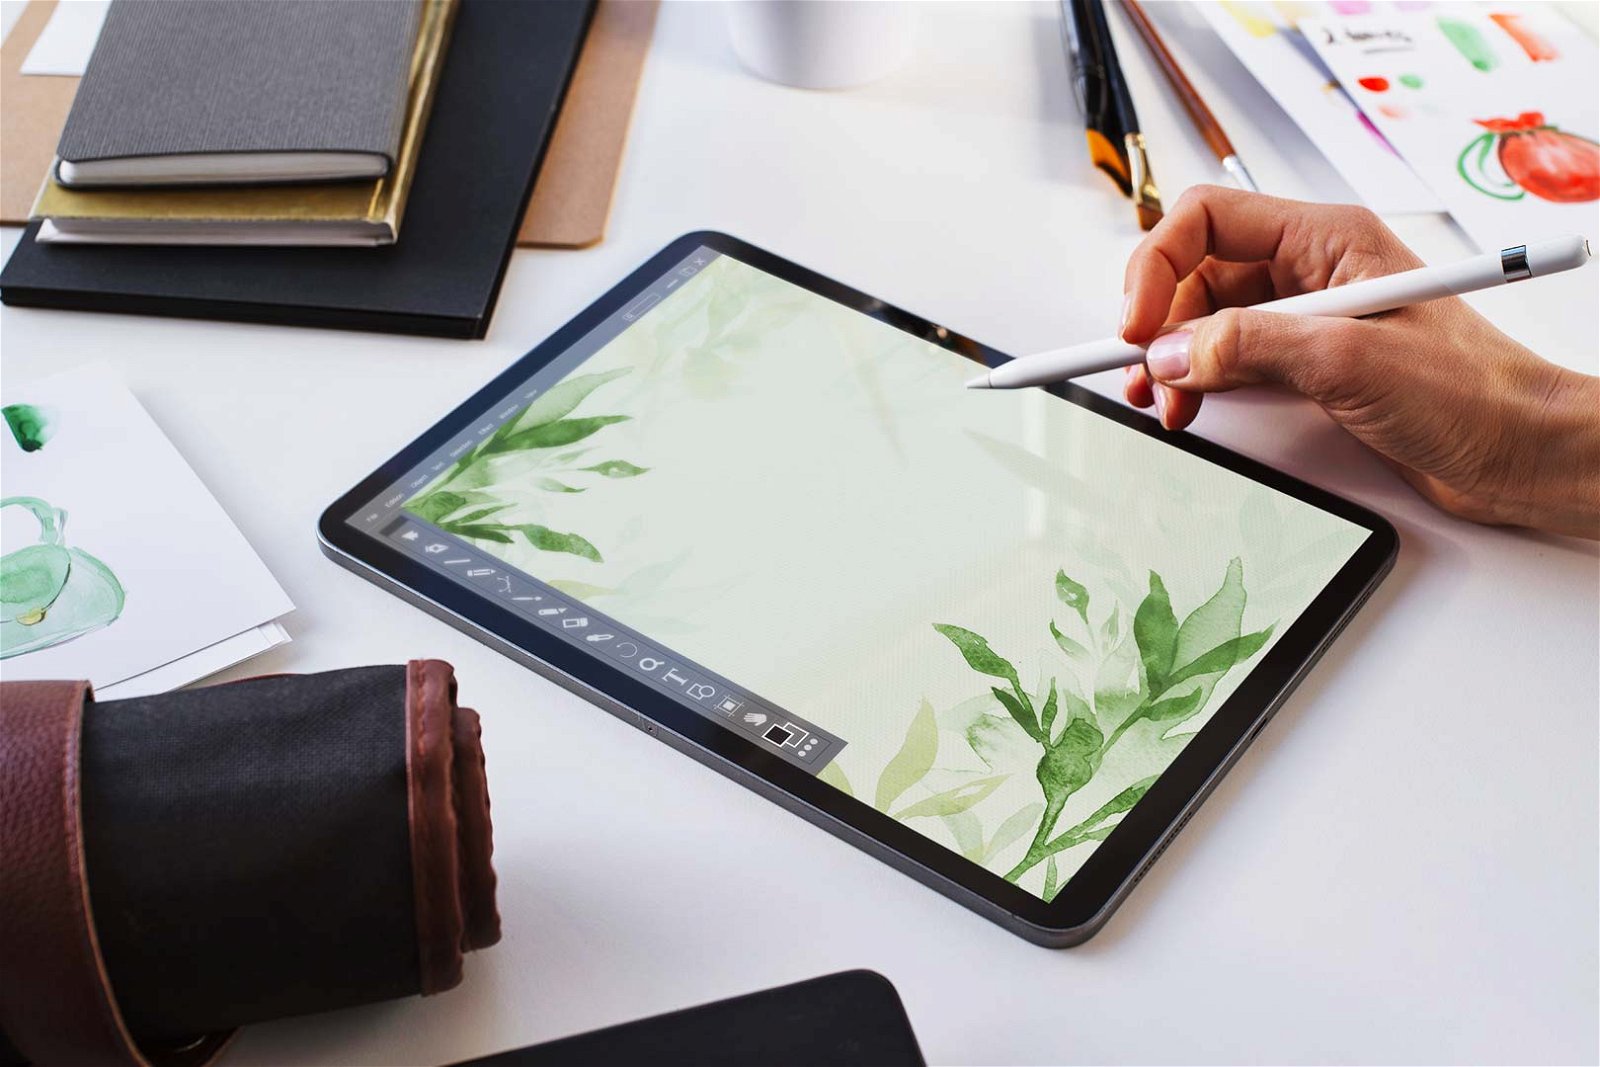 Penna per tablet: quale scegliere per disegnare o scrivere - Wired